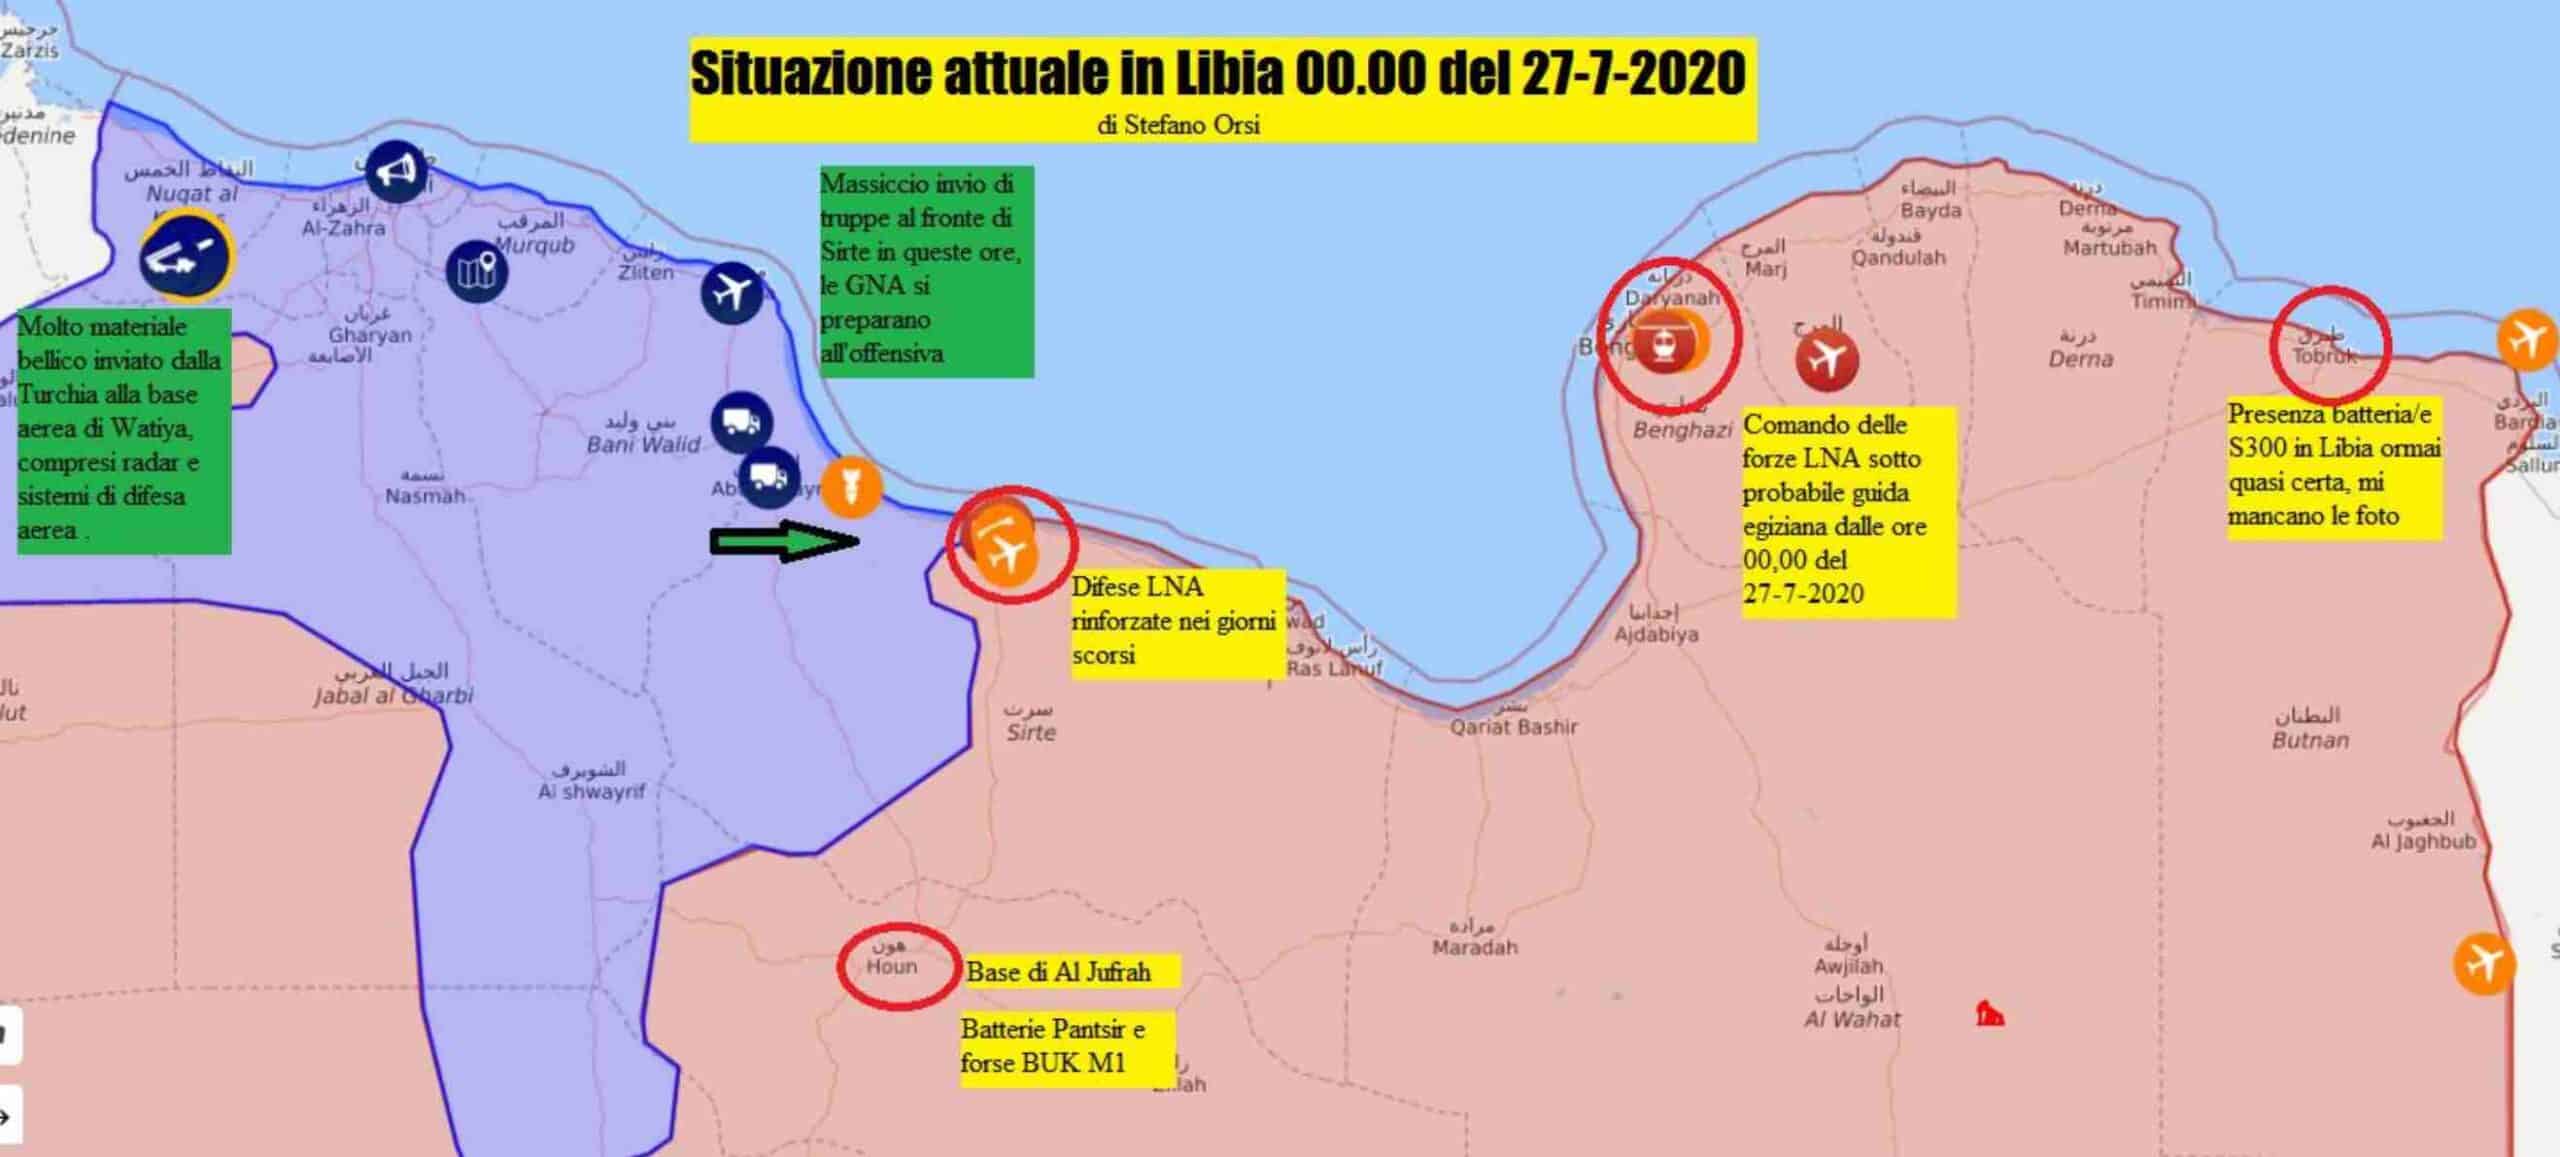 Stefano Orsi: aggiornamento sui fronti libici 27 luglio 2020 2